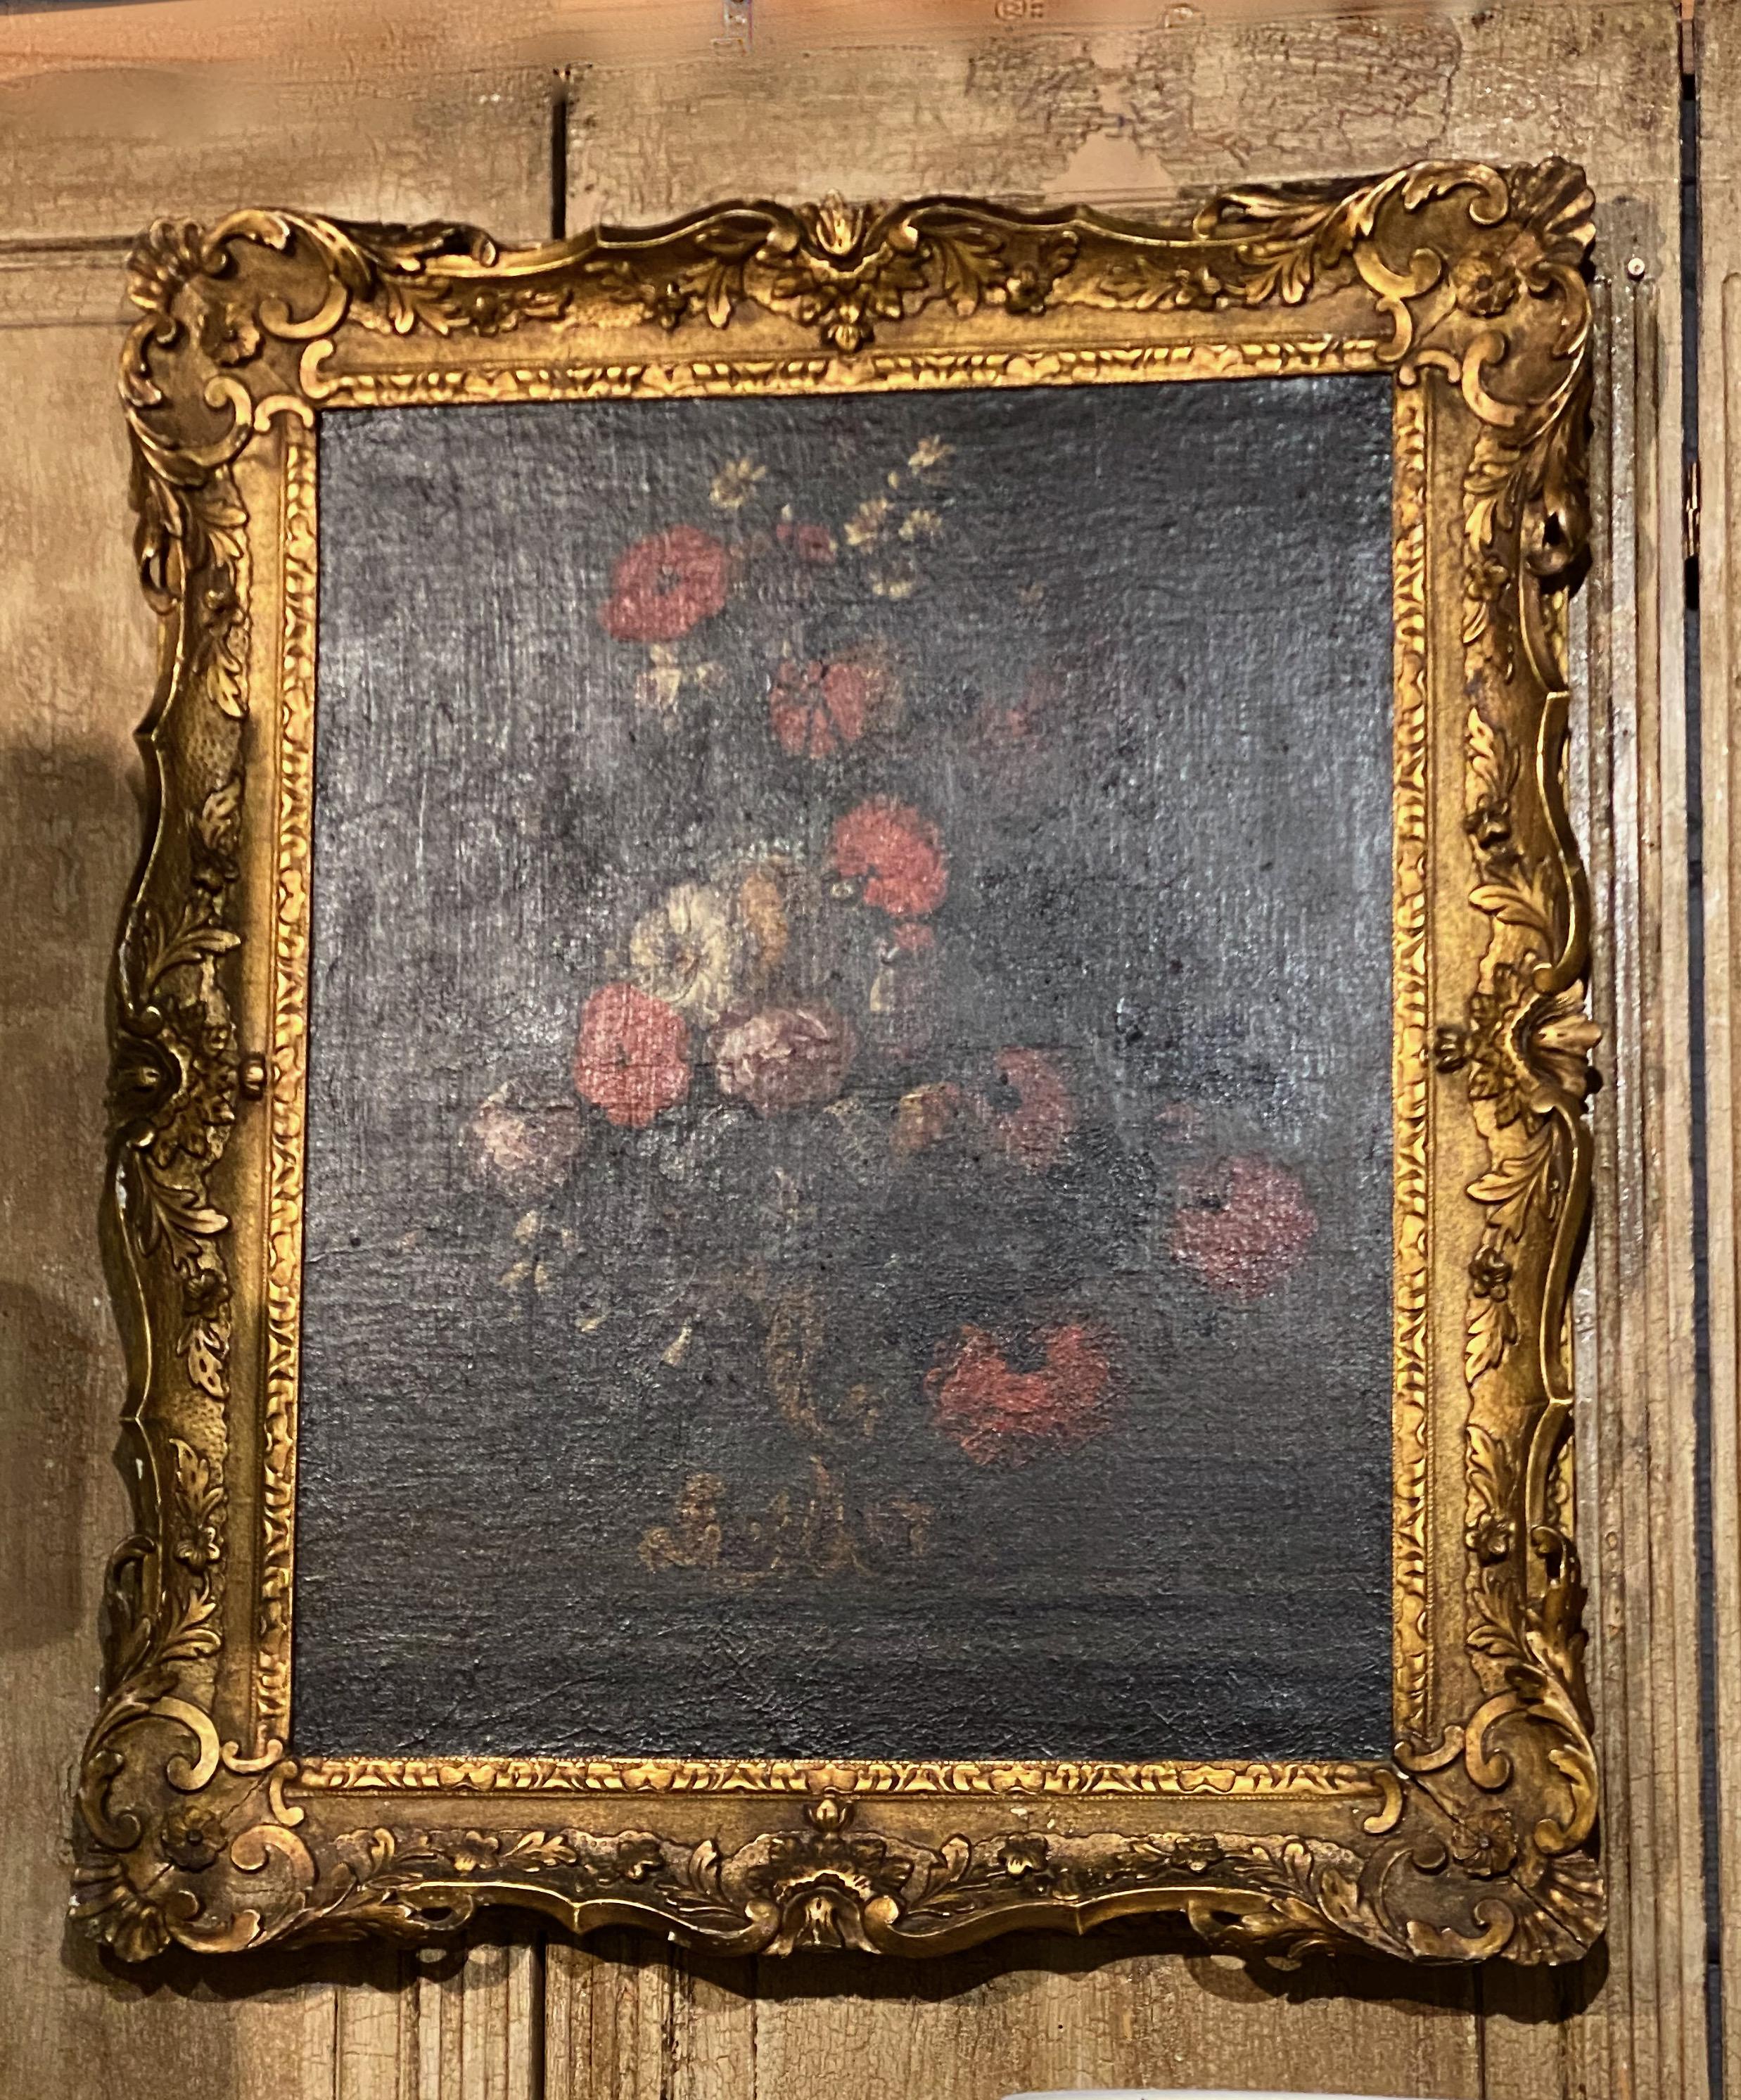 Dies ist ein klassisches italienisches Blumenstillleben des späten 17. Jahrhunderts. Obwohl das Gemälde nicht signiert ist, weist es alle Merkmale eines Meistermalers auf. Das Gemälde und der Originalrahmen sind für ihre mehr als 300 Lebensjahre in